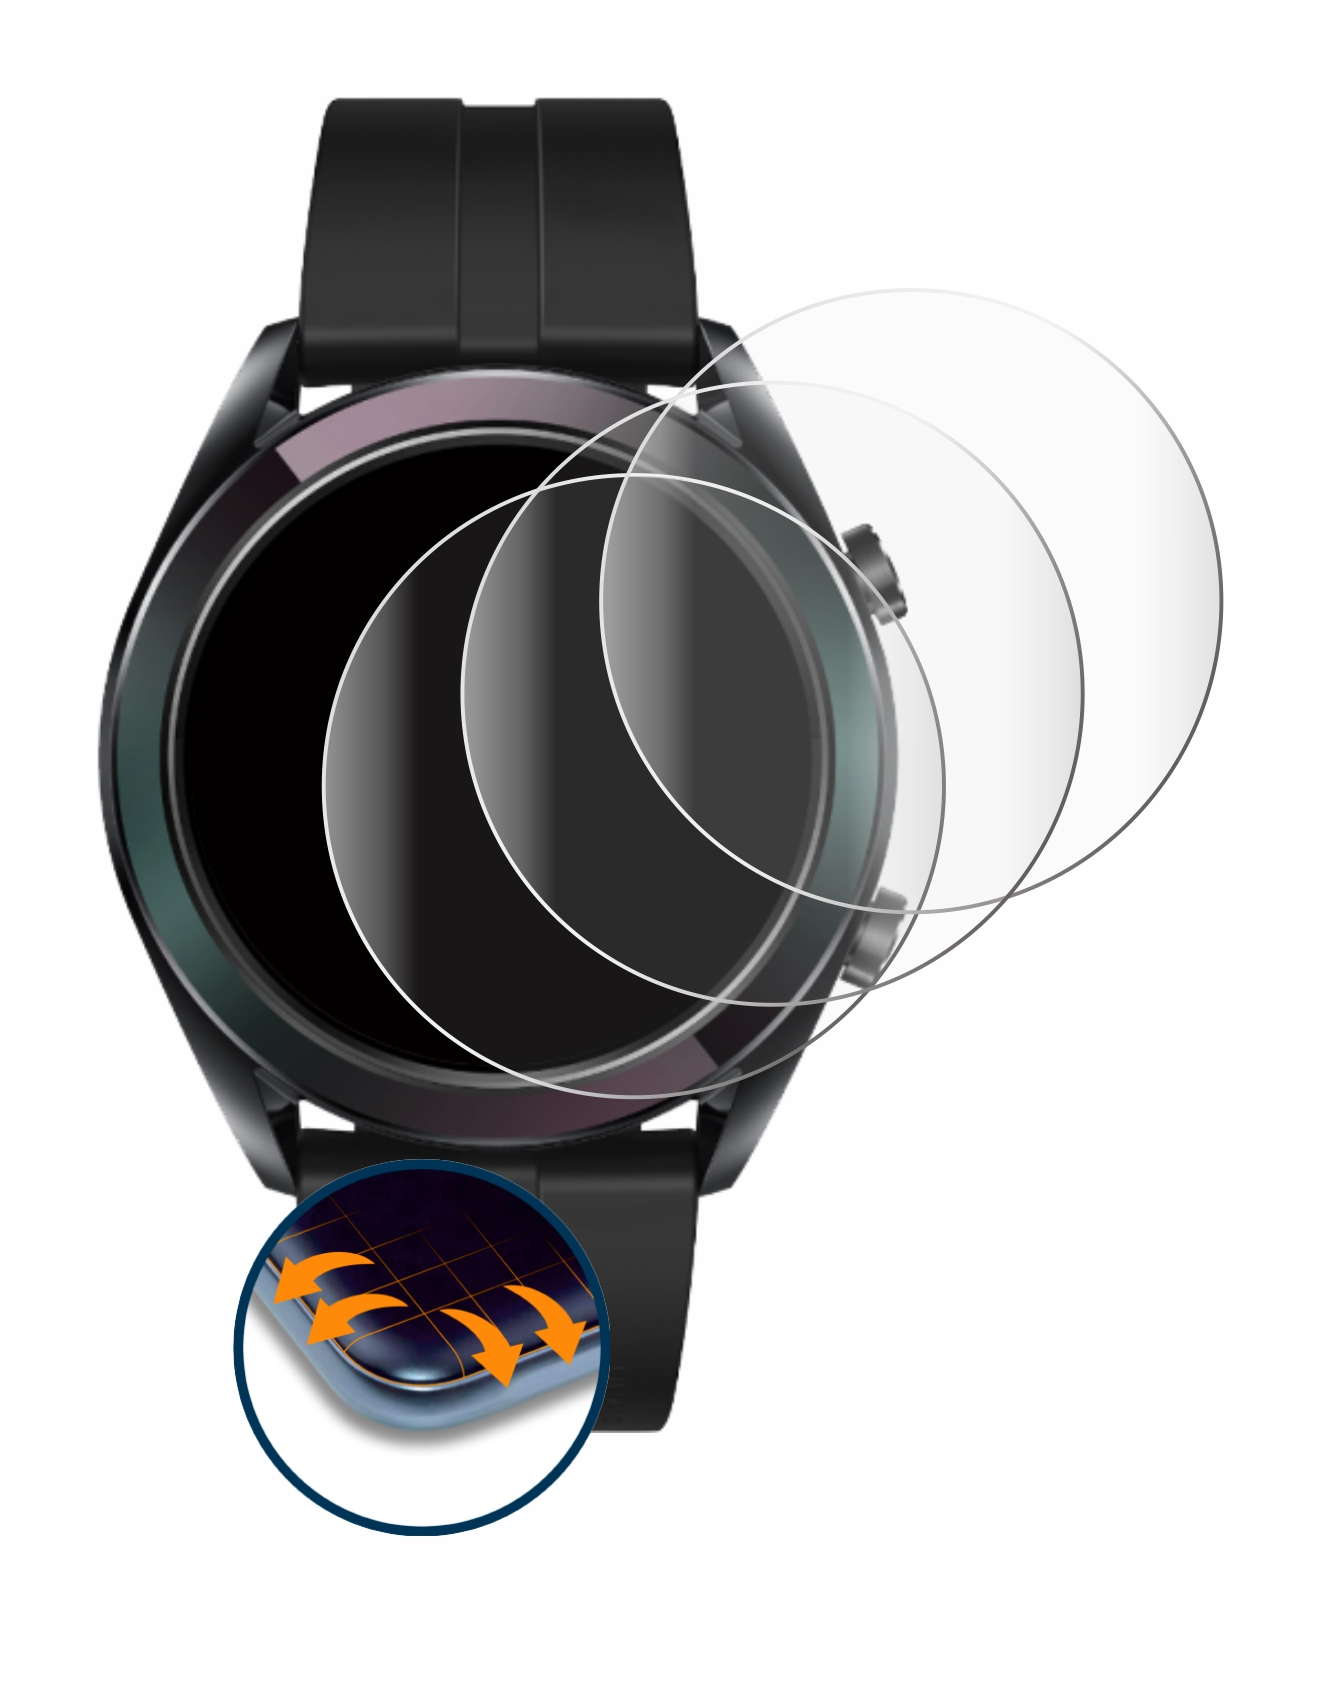 SAVVIES 4x Schutzfolie(für 3D Huawei GT Curved Watch Full-Cover Flex Elegant mm)) (42